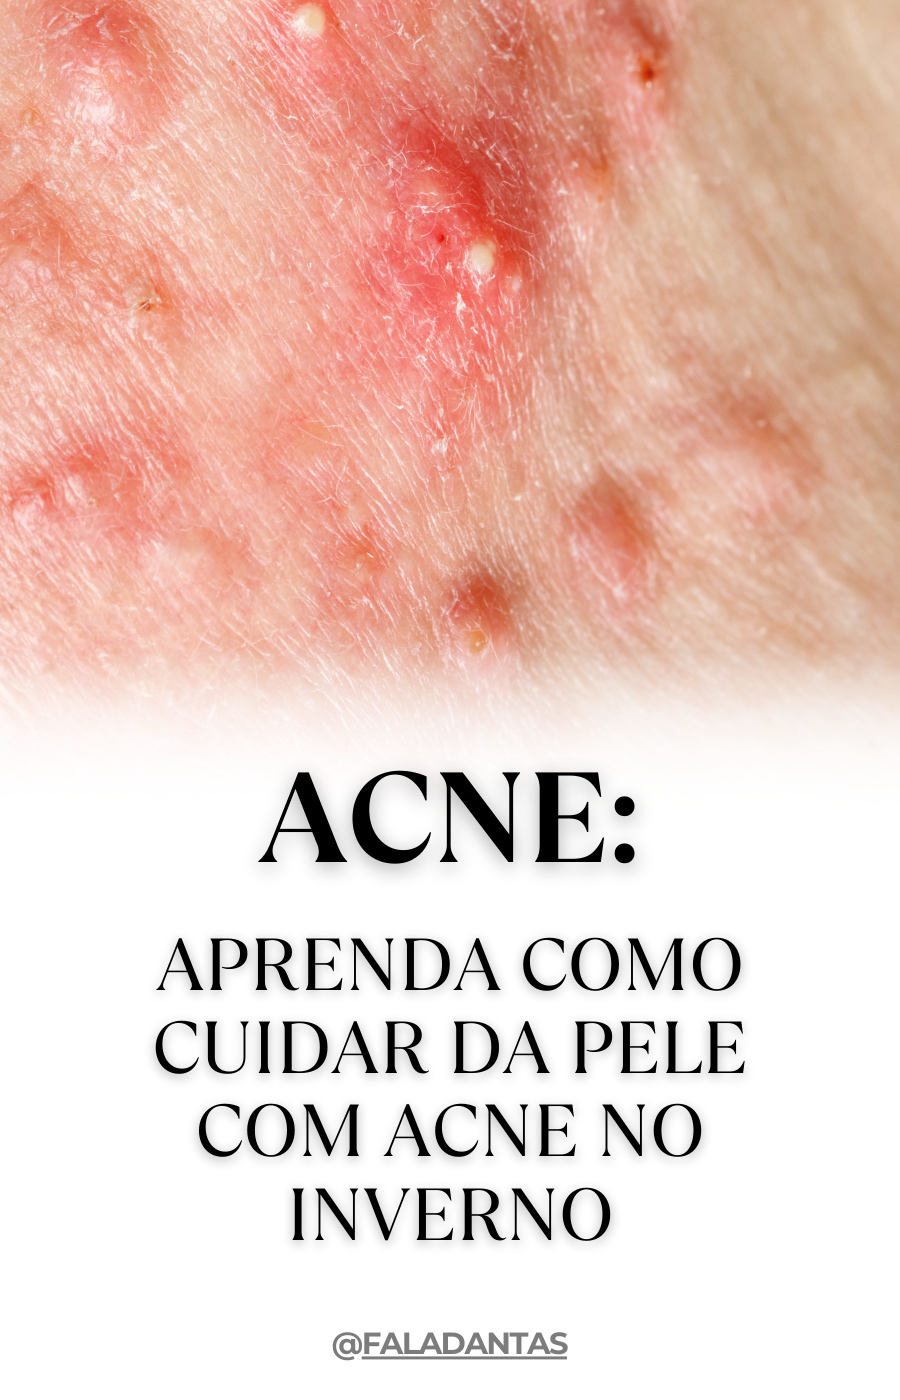 Como cuidar da pele com acne no inverno